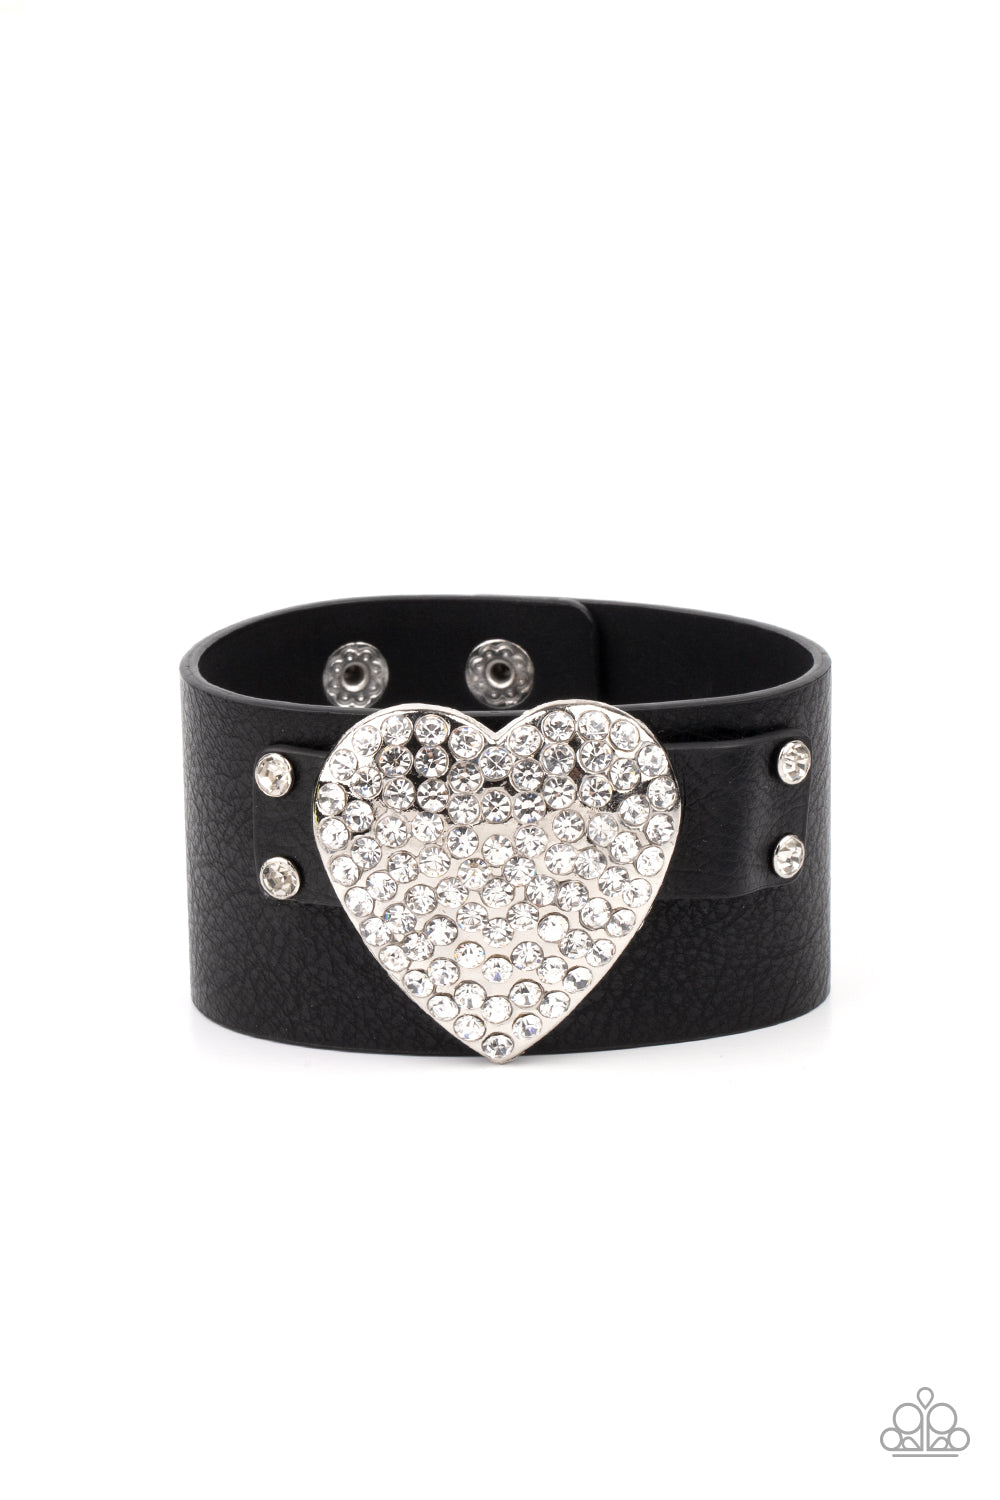 Bracelet, Sensitive Skin, Hypoallergenic Jewelry, black, heart, leather